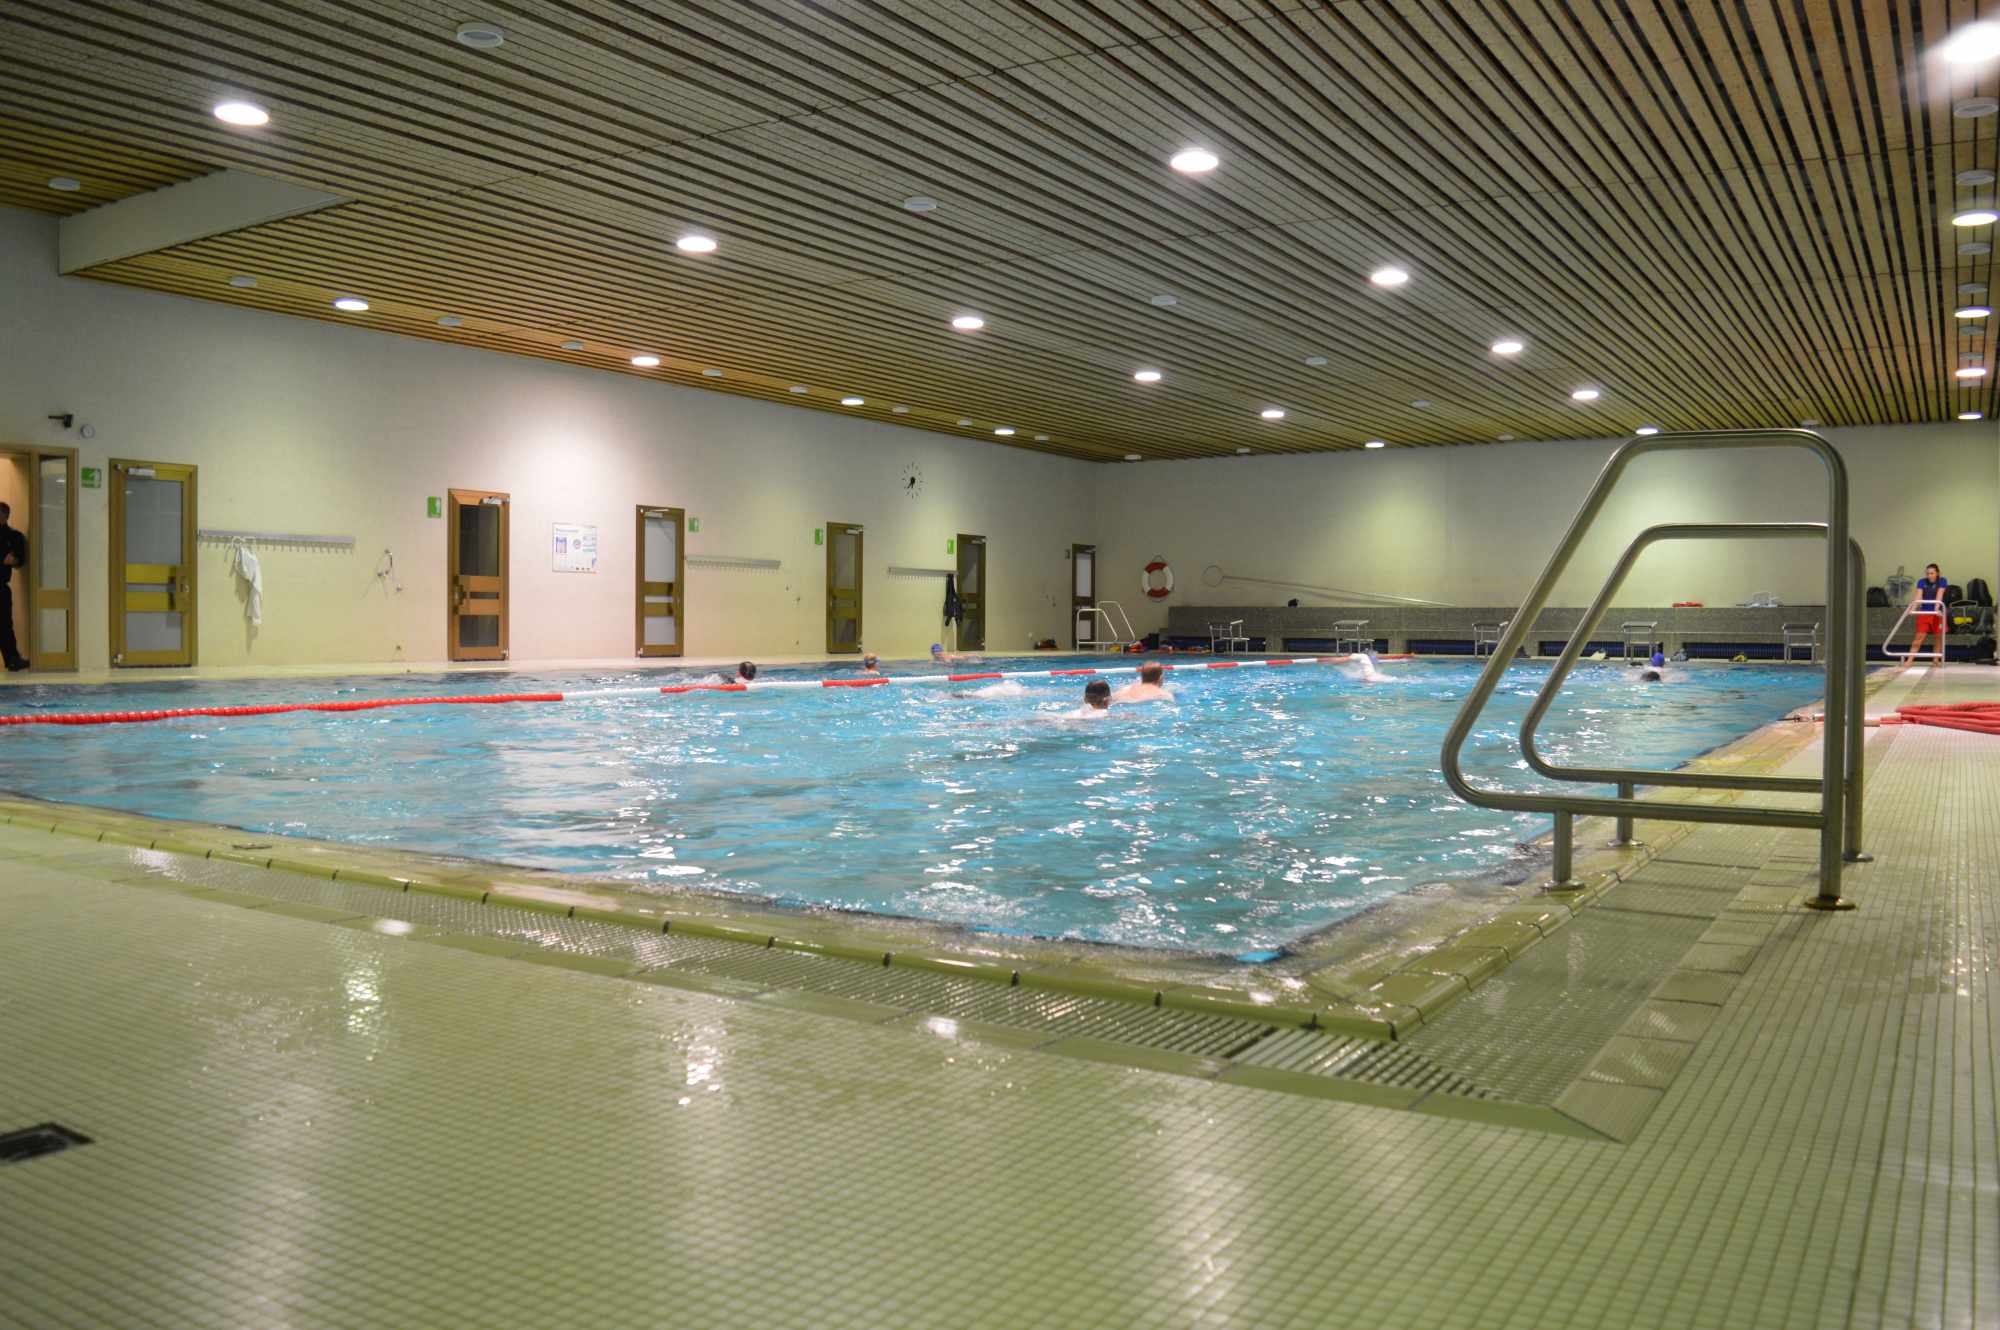 Aufnahme des beleuchteten Viechtacher Hallenbads, in dem mehrere Schwimmer ihre Bahnen ziehen.